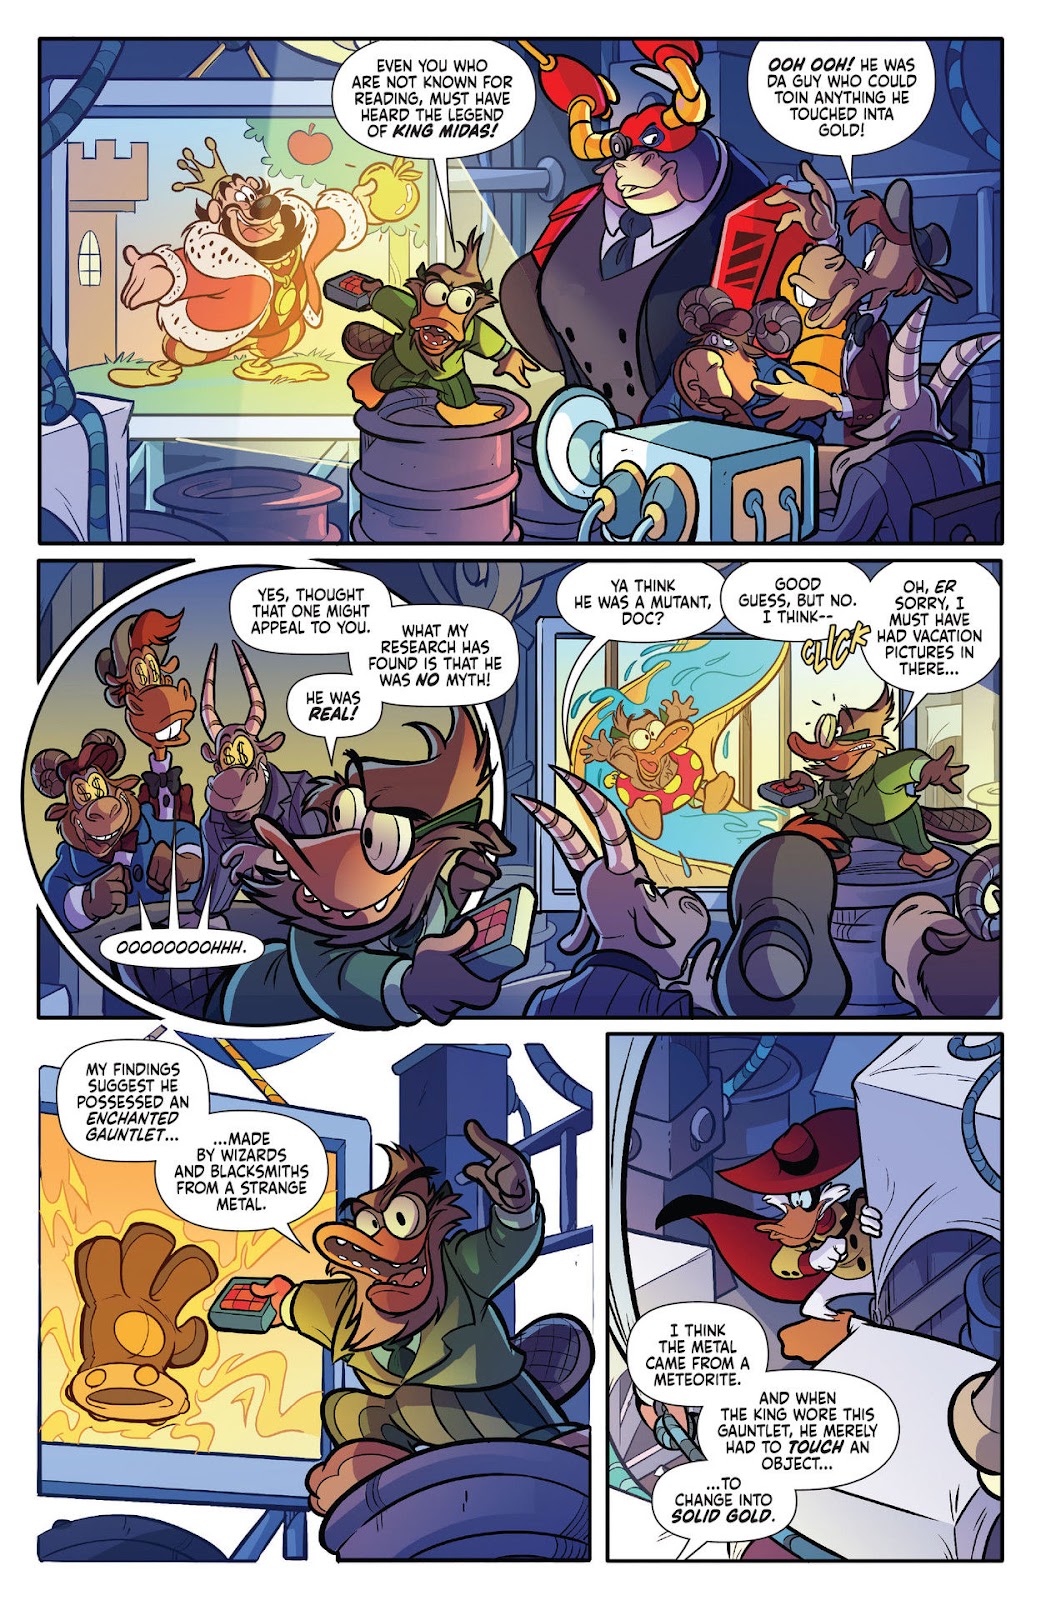 Darkwing Duck: Negaduck issue 1 - Page 23